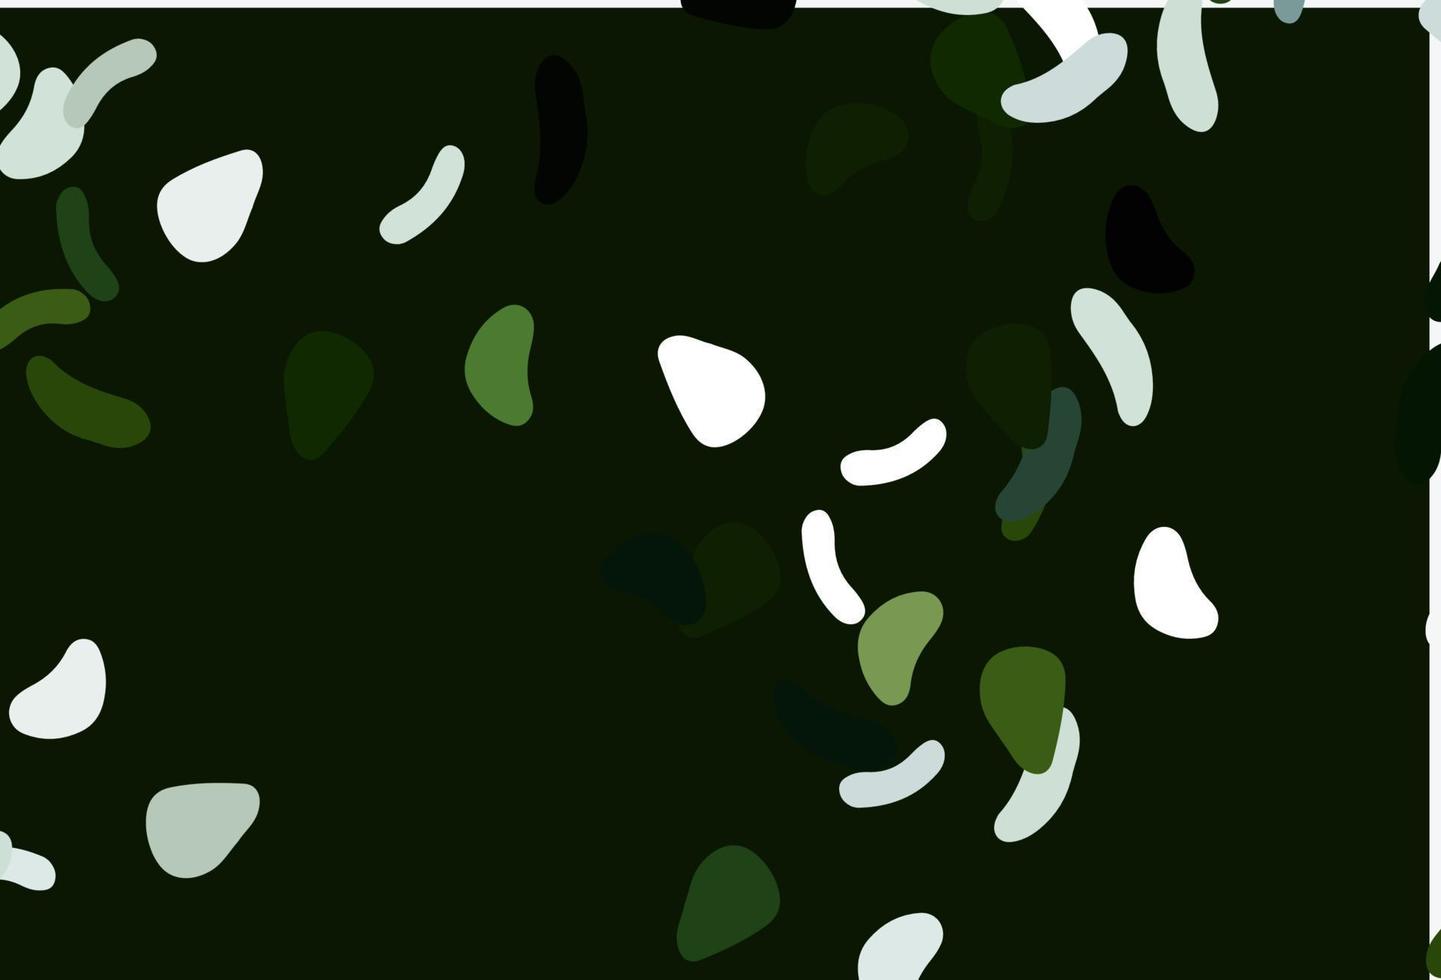 padrão de vetor verde claro com formas caóticas.